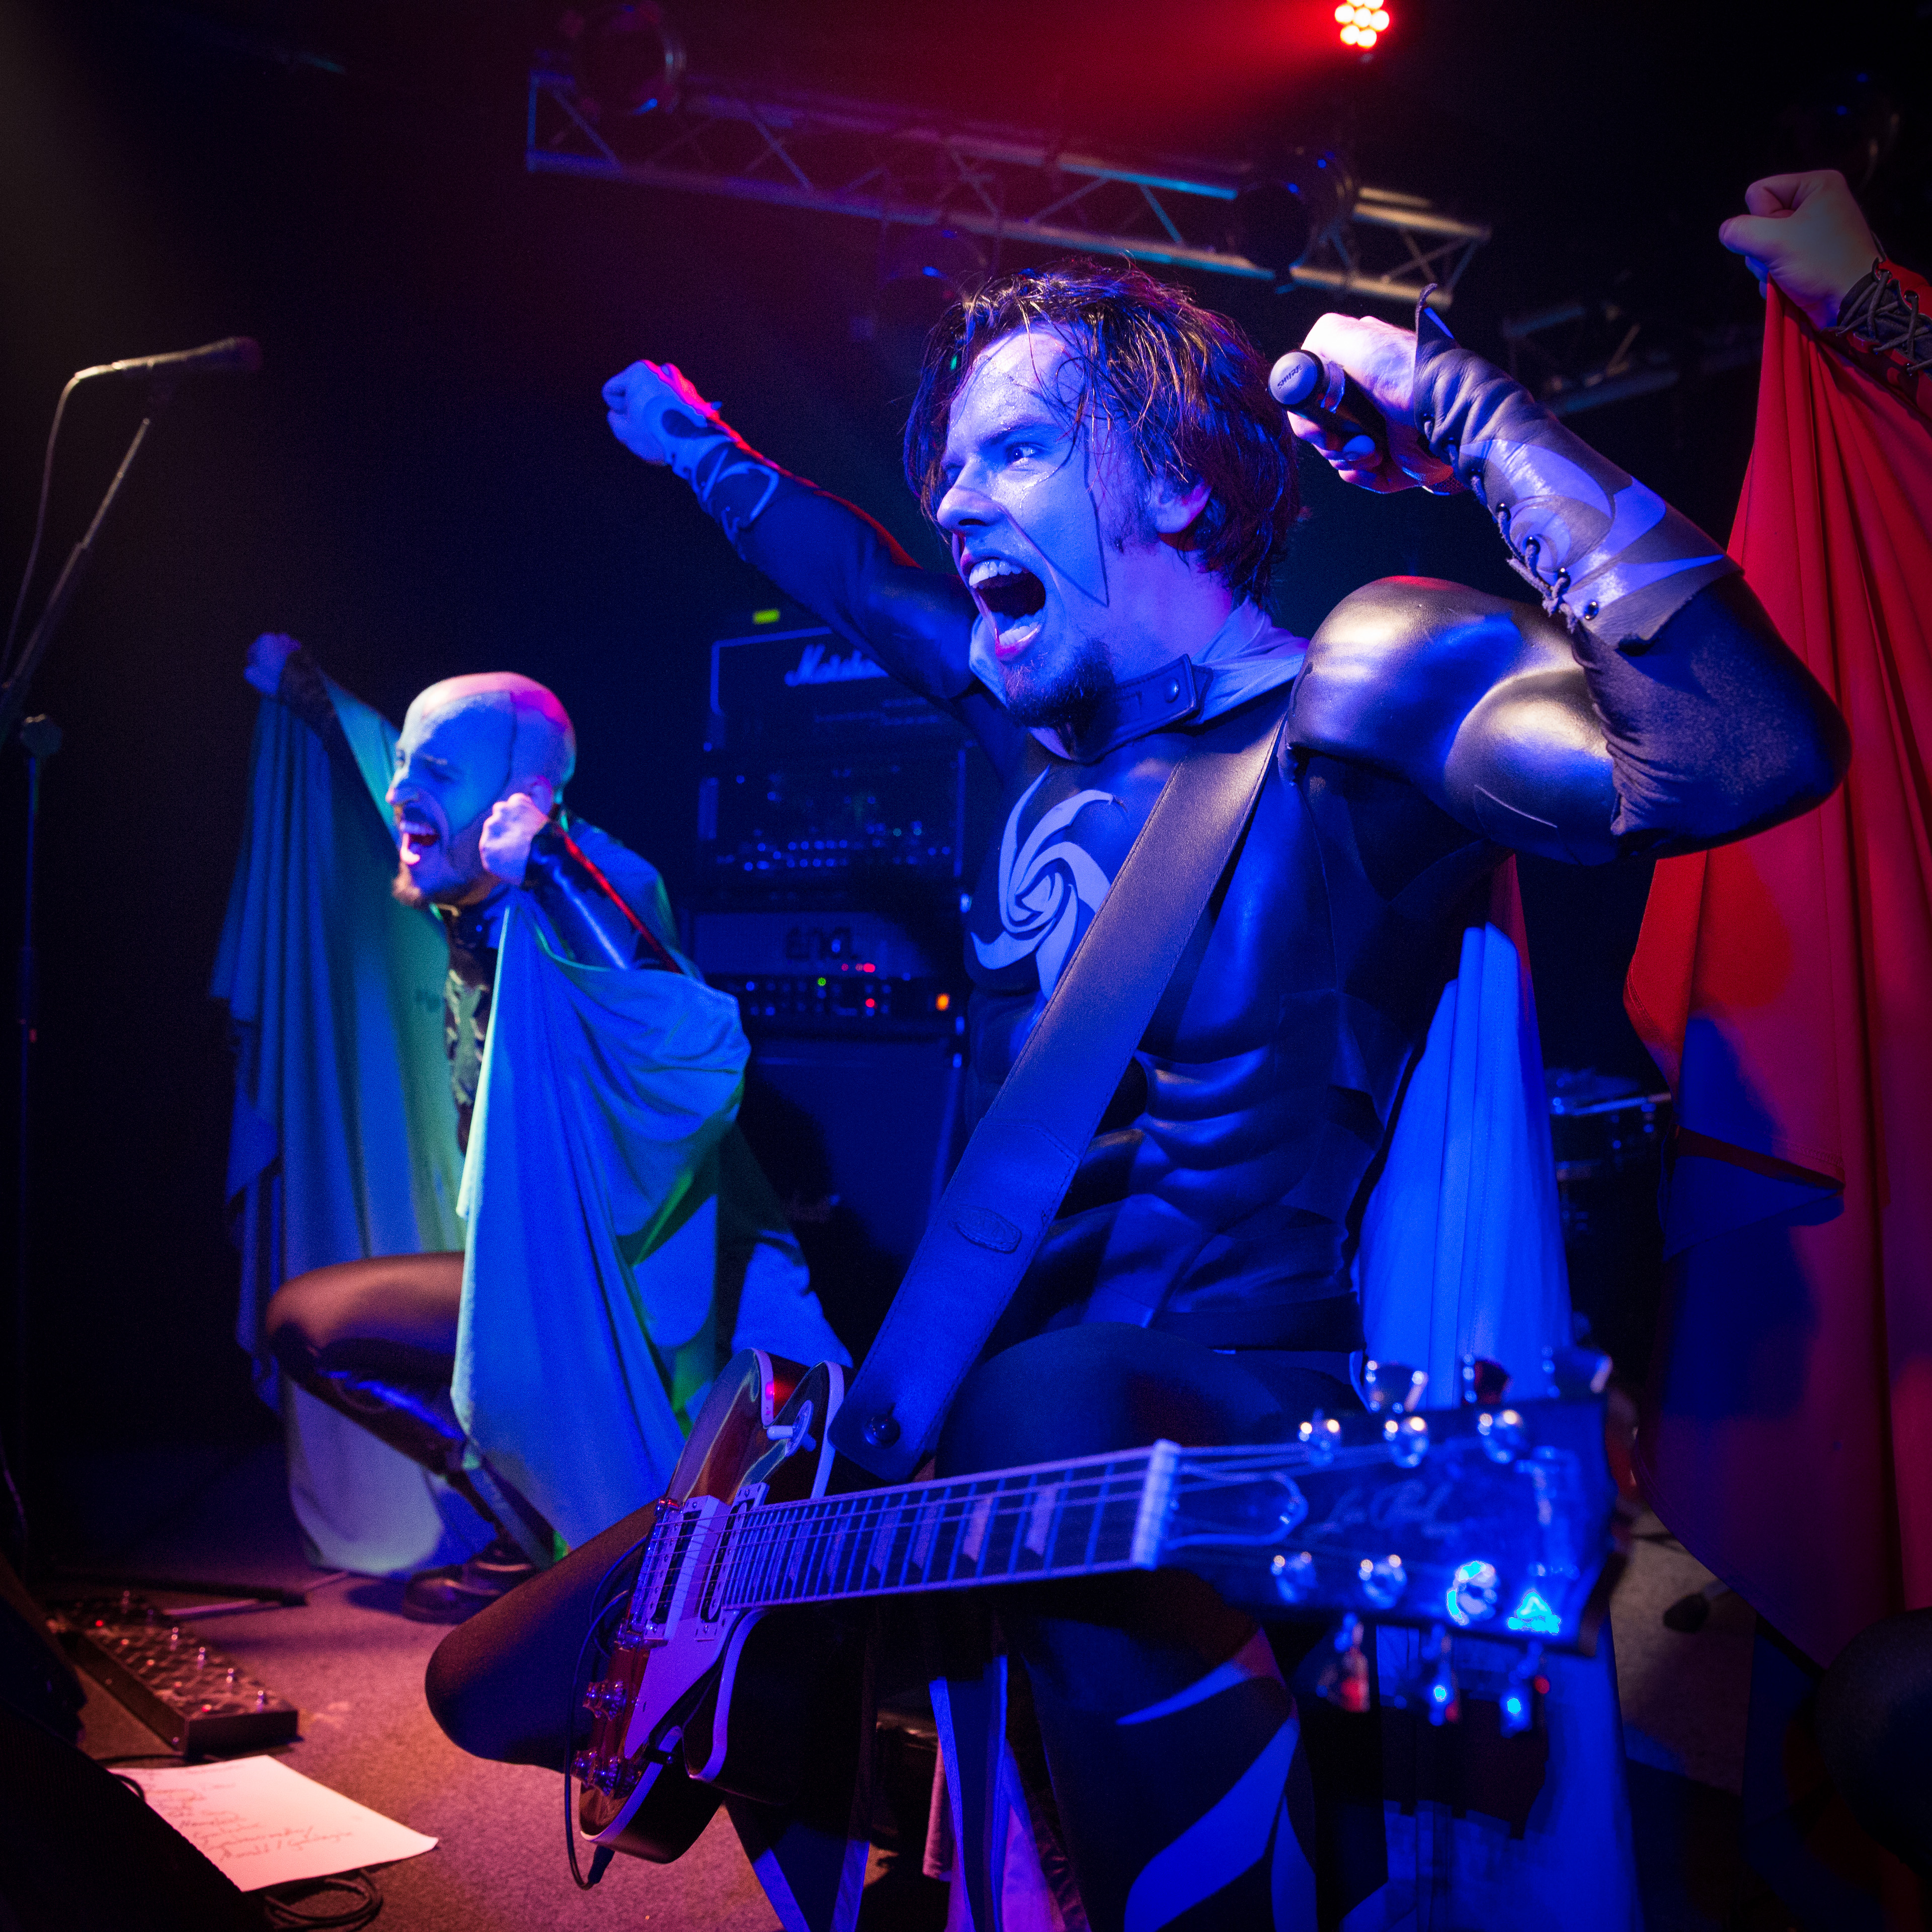 Grailknights live, Wacken Road Show, 08.11.2014, Oberhausen